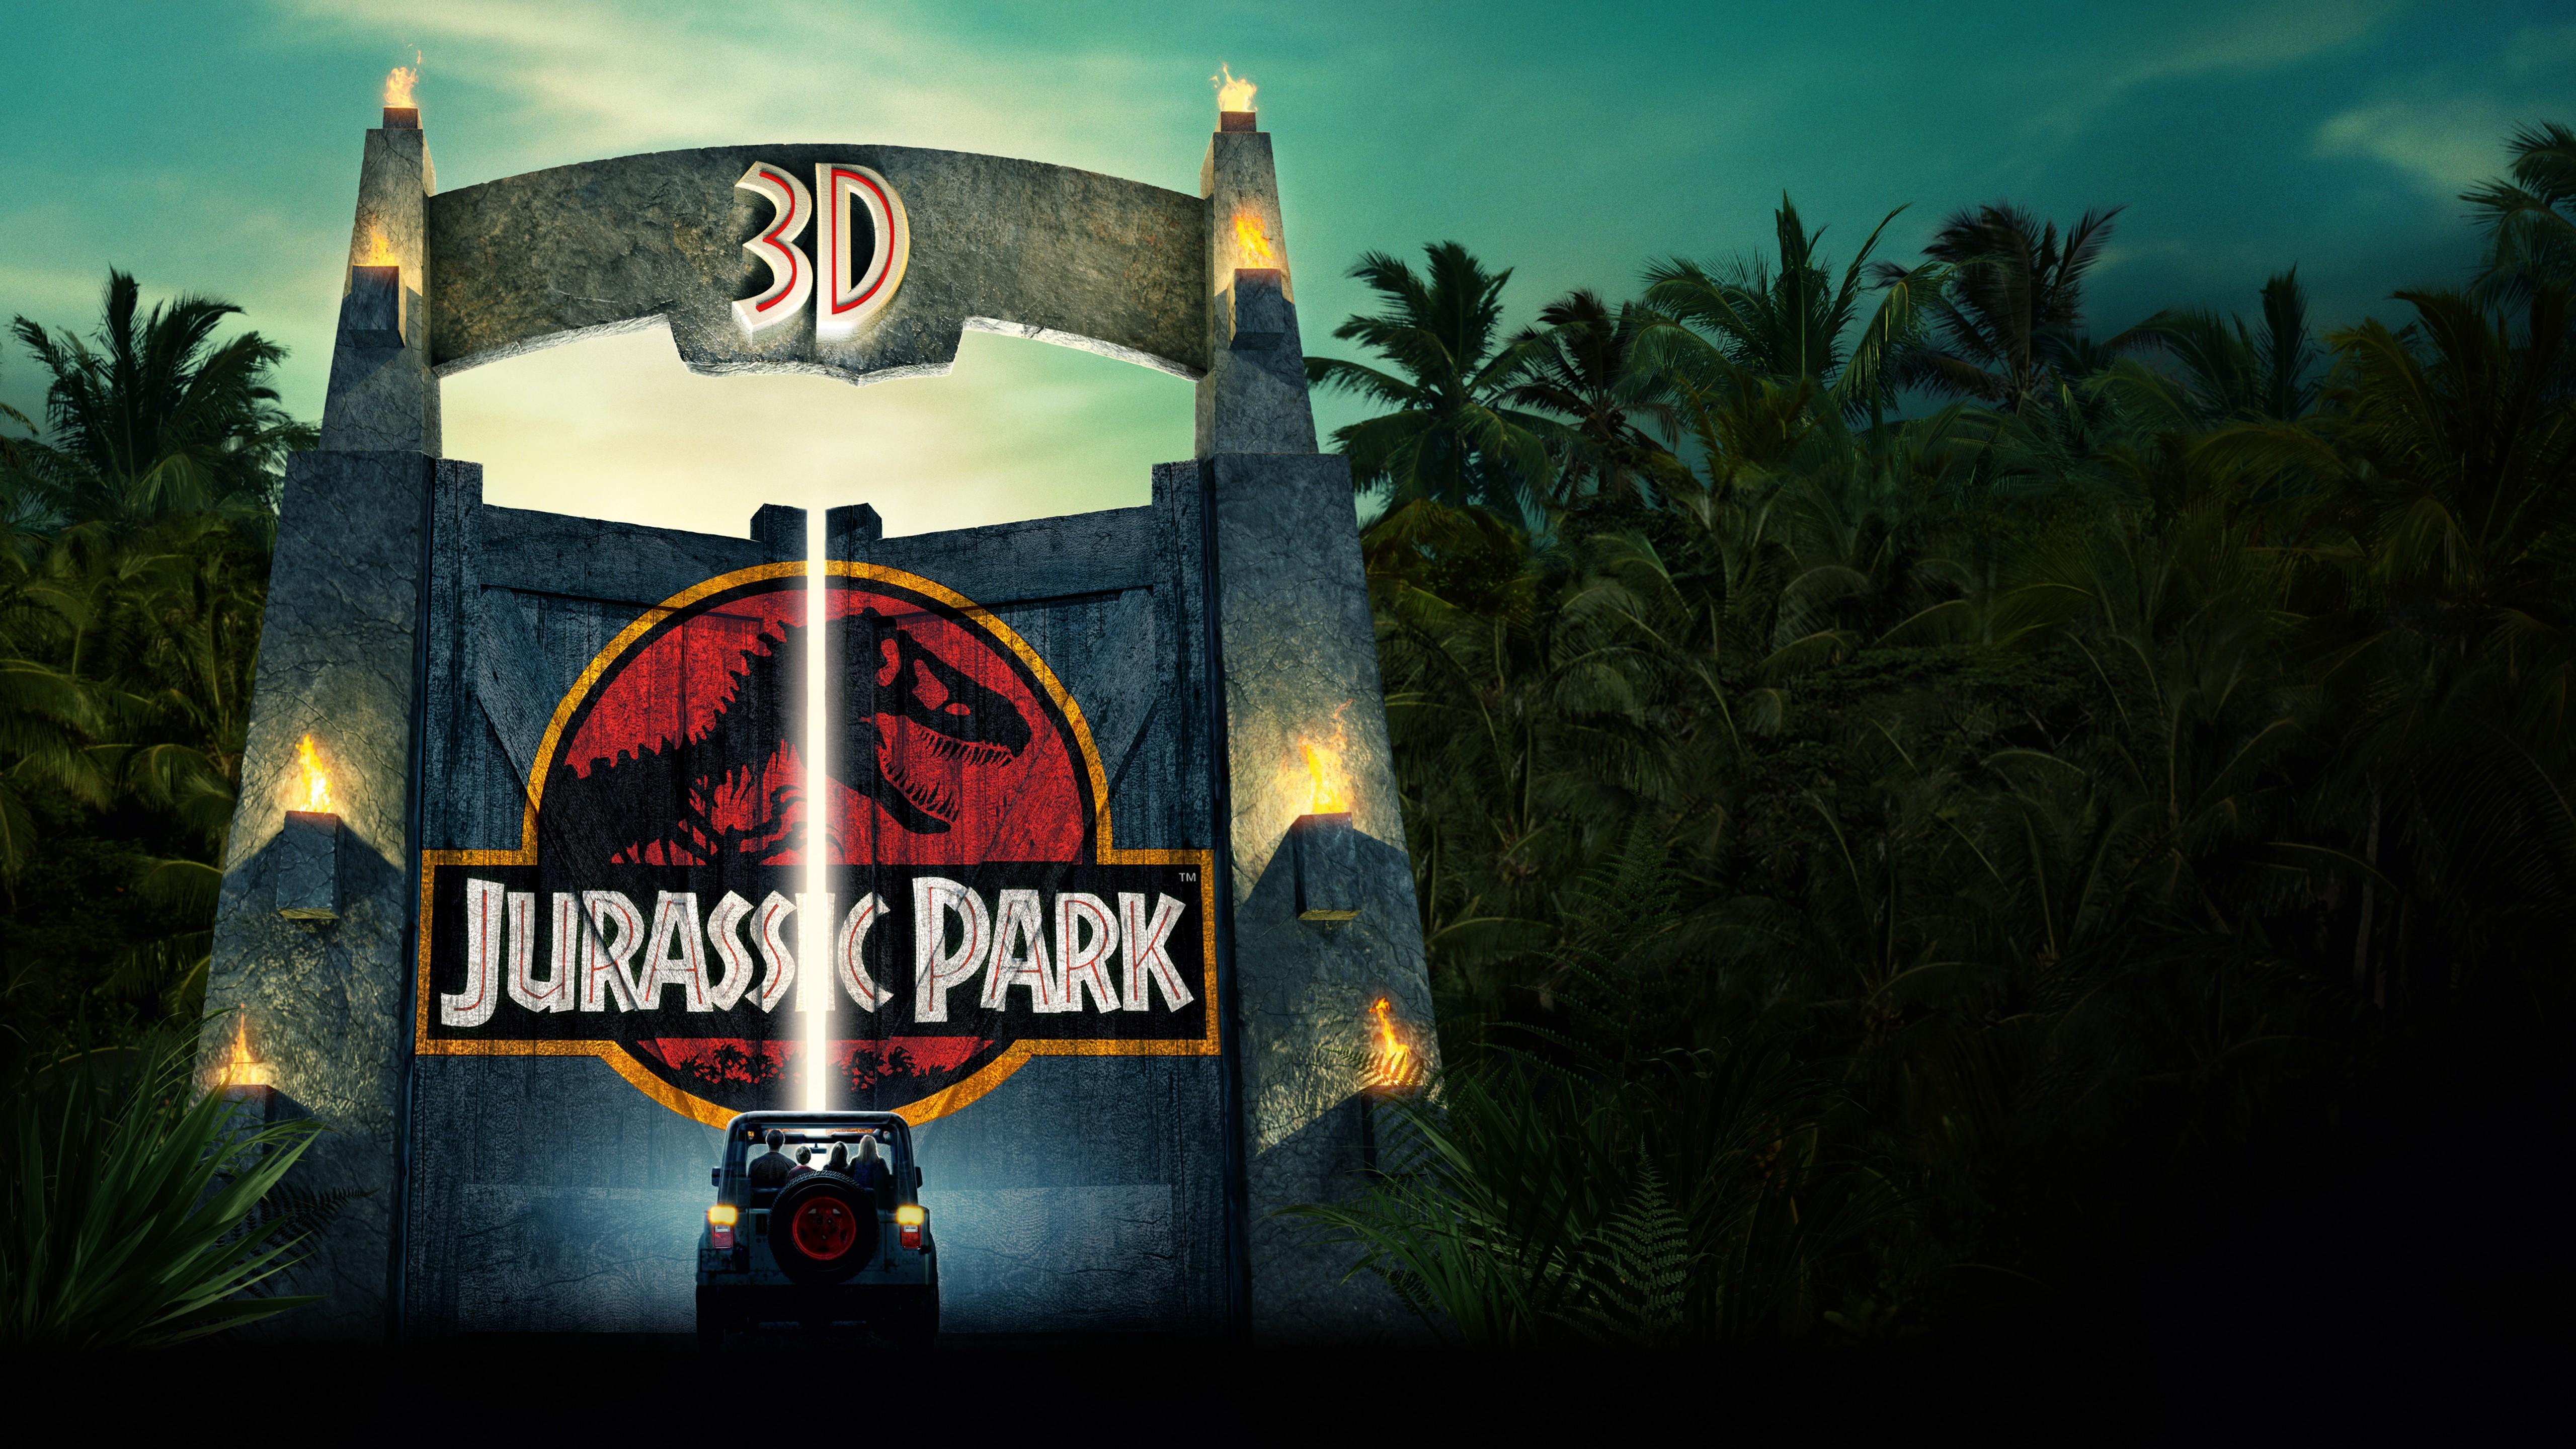 Wallpaper Jurassic Park, 3D, HD, 4K, 8K, Movies